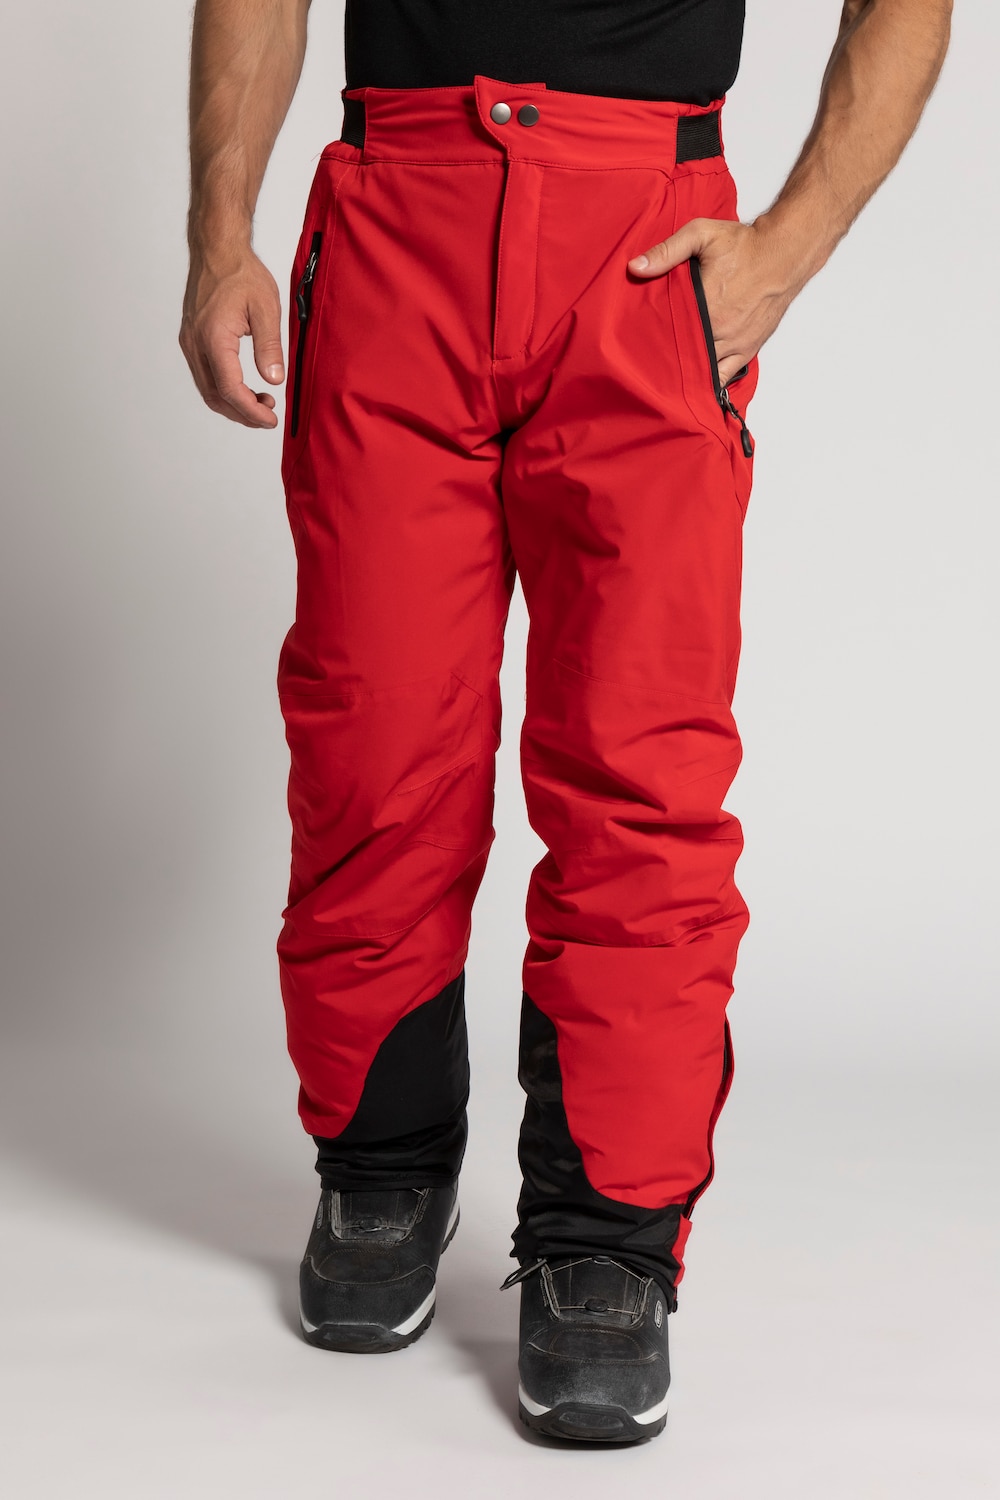 Grote Maten skibroek, Heren, rood, Maat: 3XL, Polyester, JP1880